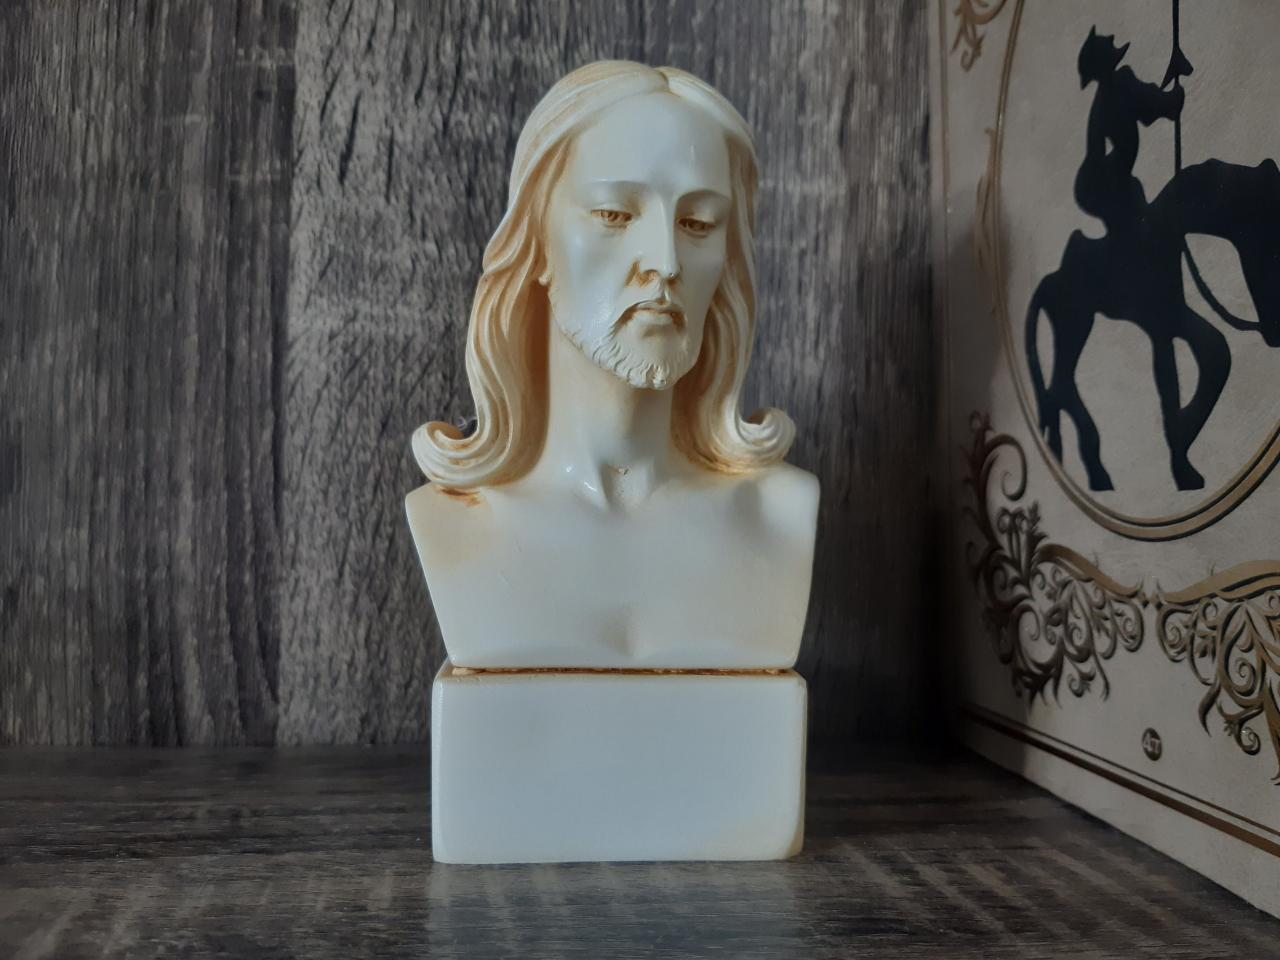 Jesus Christ Bust Statue Made Of Alabaster